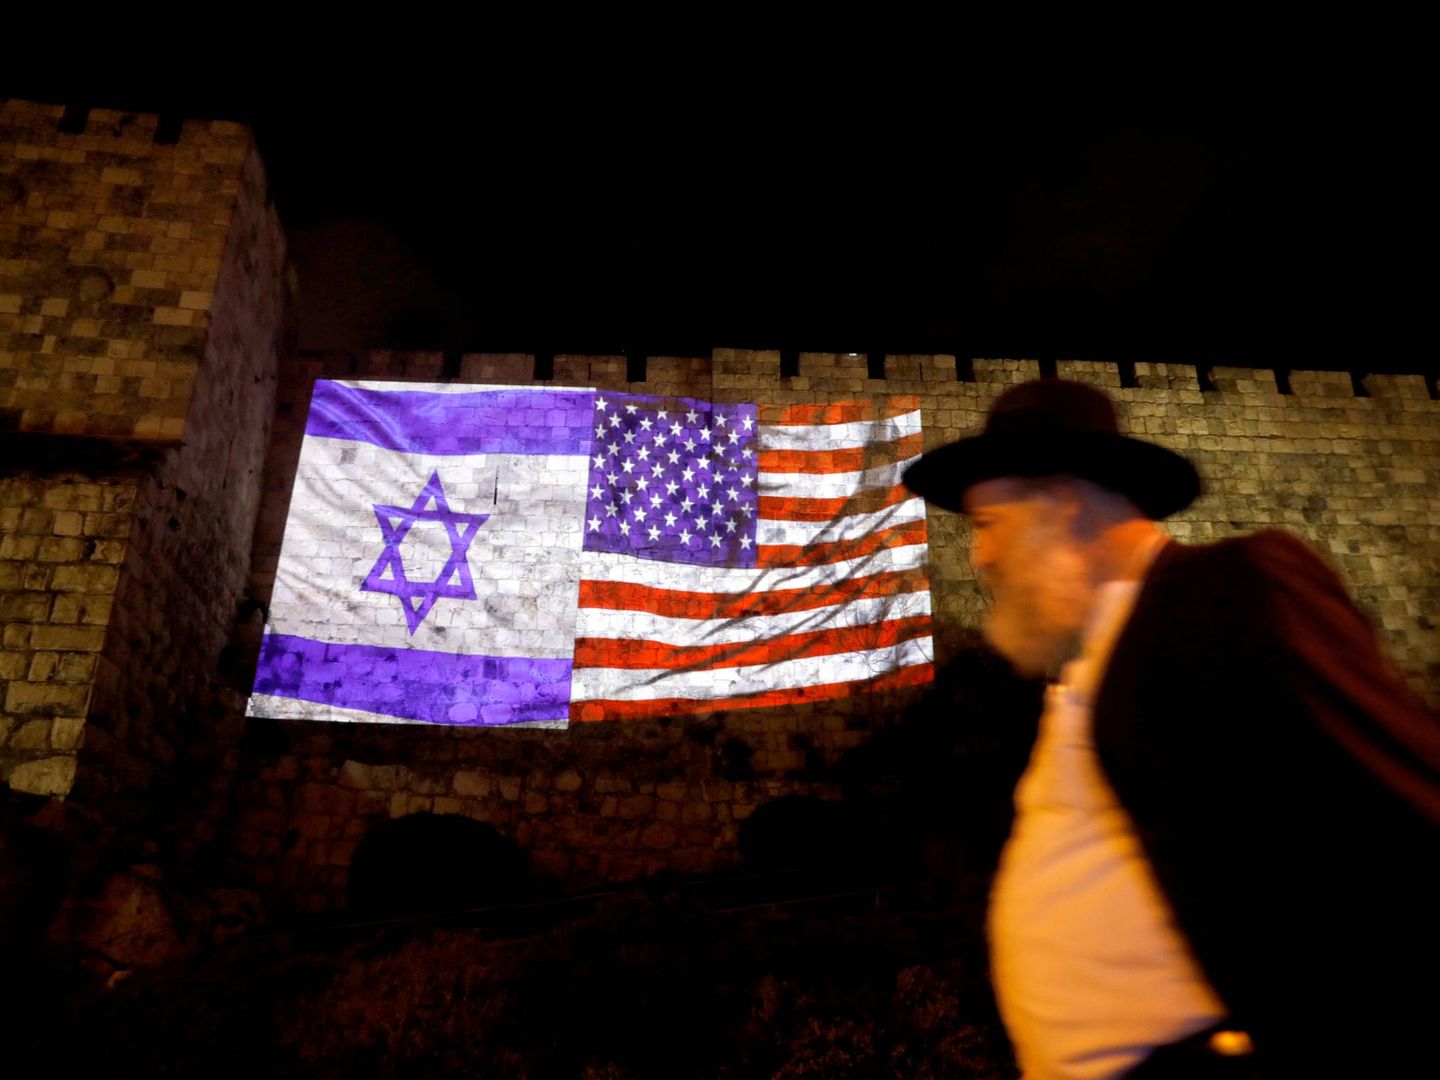 Un judío ultraortodoxo pasa ante las banderas estadounidense e israelí en la Ciudad Vieja de Jerusalén. (Reuters)